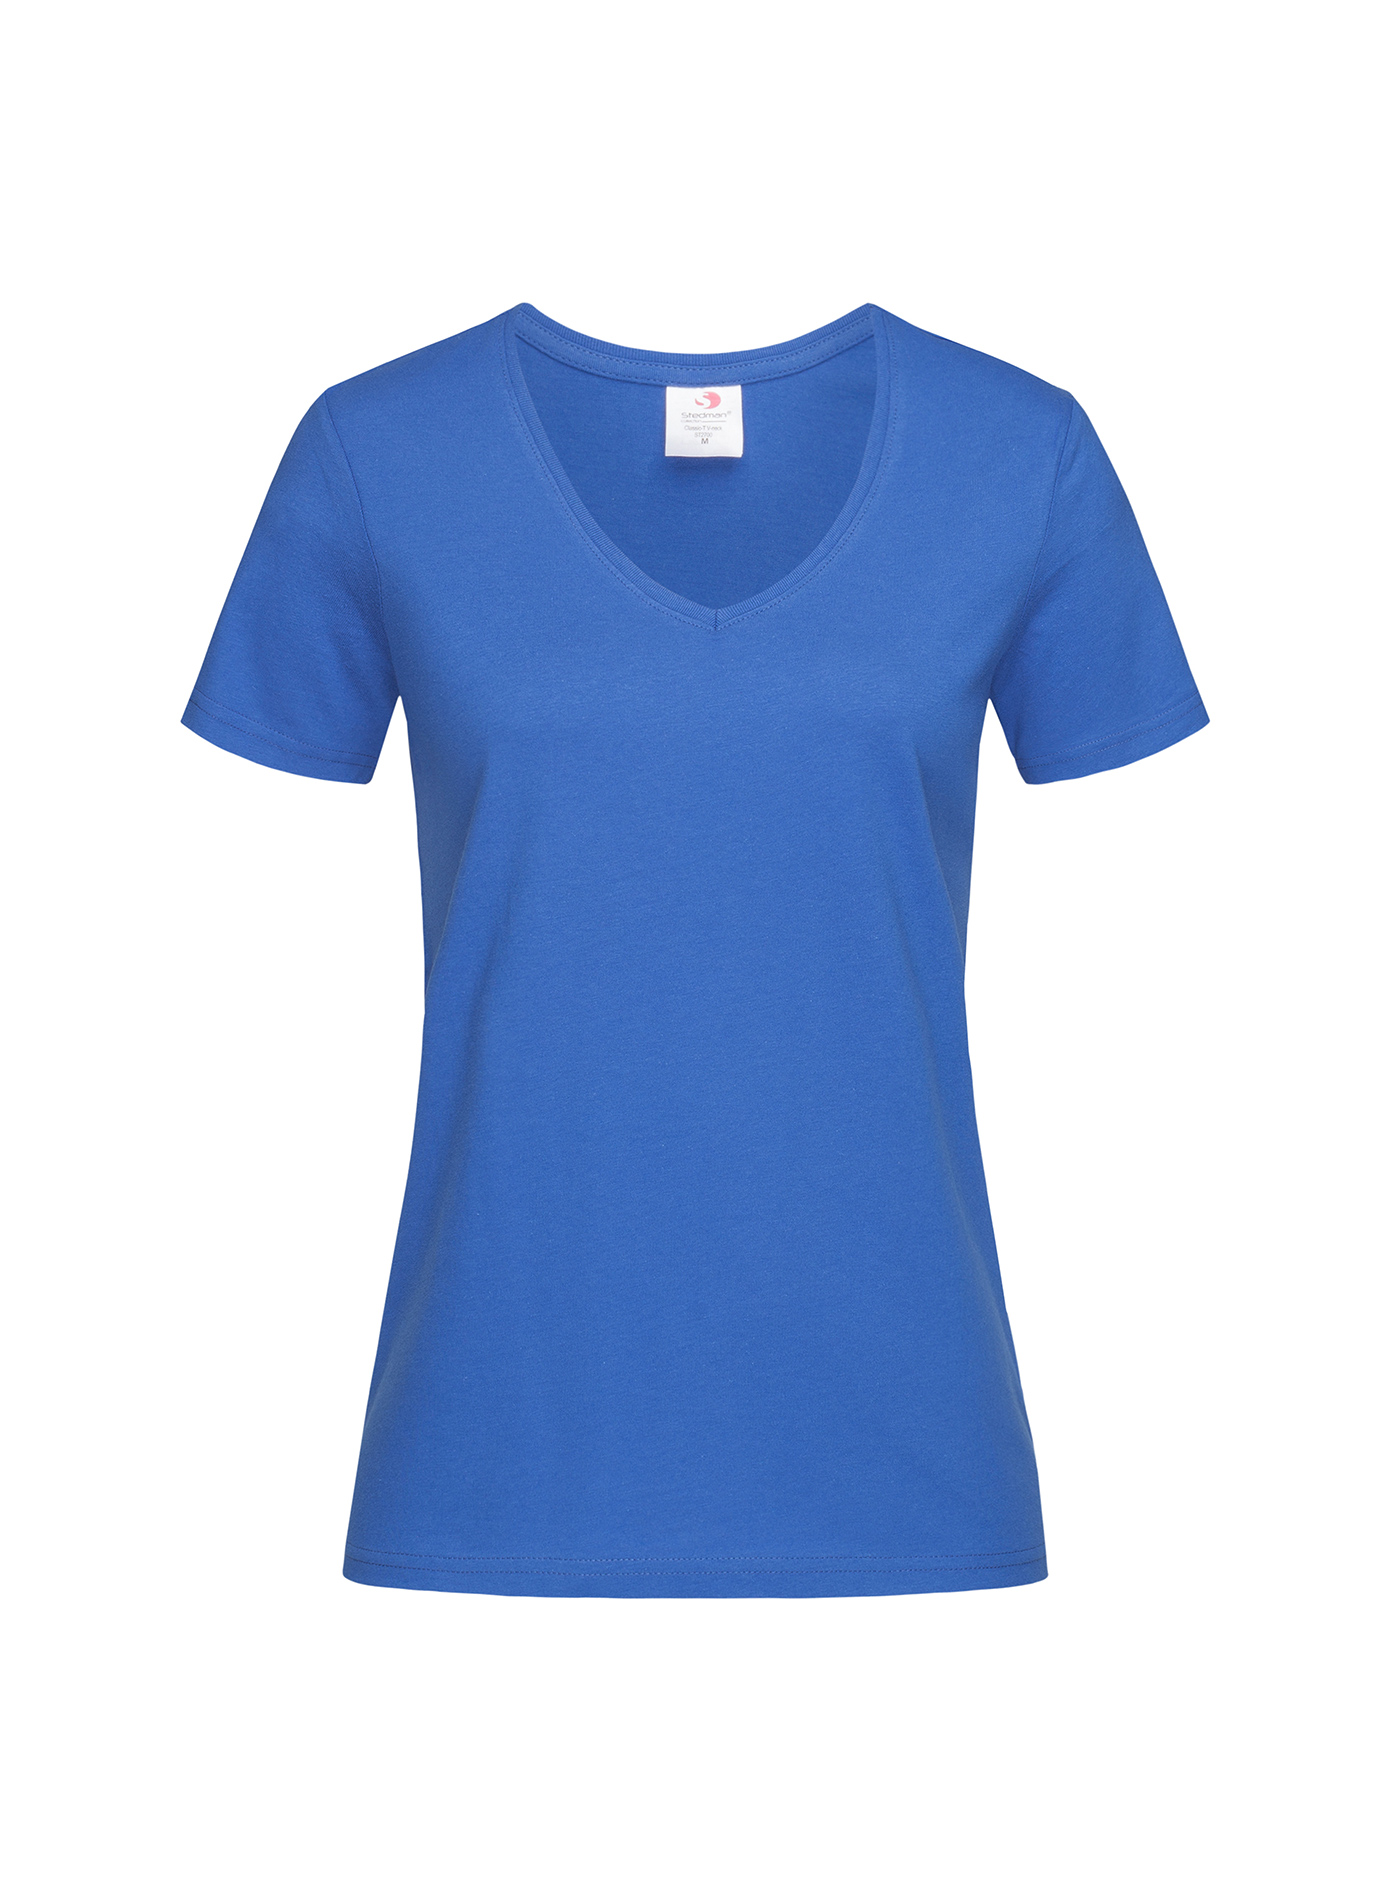 Dámské tričko s V-výstřihem Stedman - Královská modrá XL